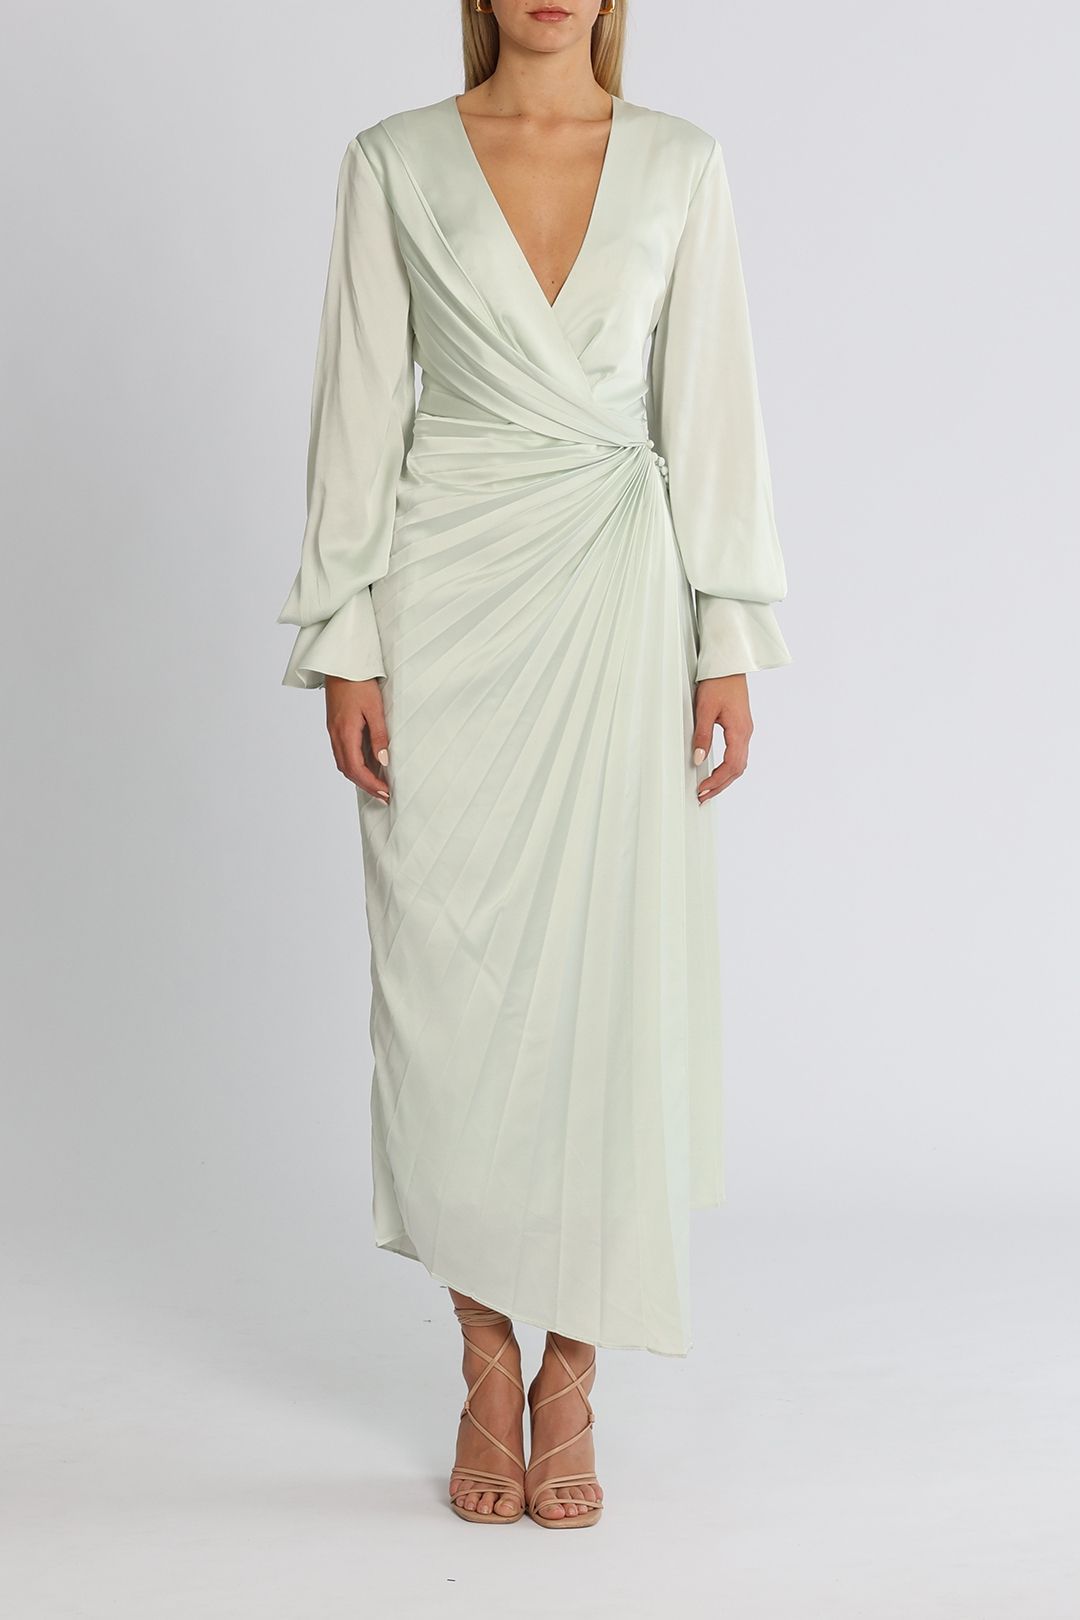 Ephemera: Summer Silk in a Real DVF Wrap Dress